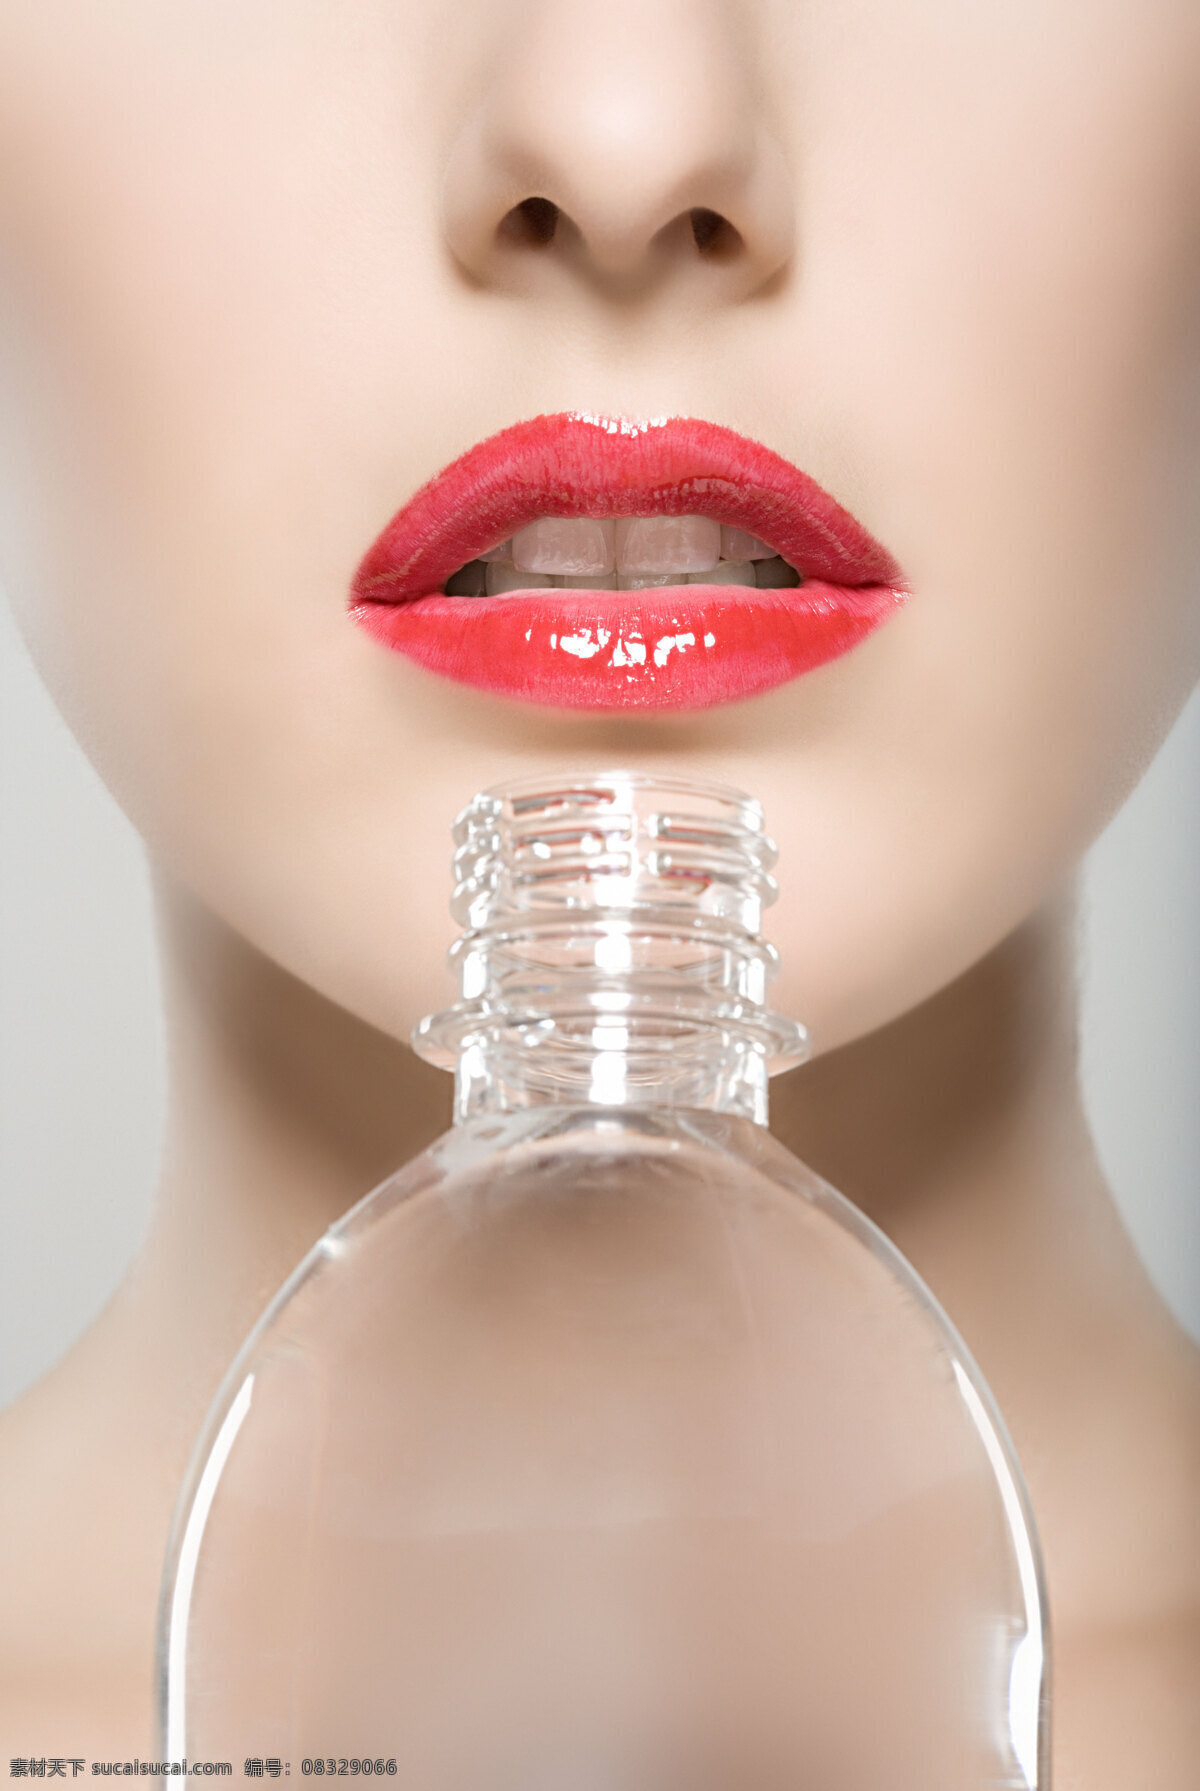 性感 艳丽 嘴唇 美女 女人 塑料瓶 透明 无瑕 欧美 红色 表情 白皙 皮肤 化妆 白嫩 光泽 创意 海报 高清图片 美女图片 人物图片